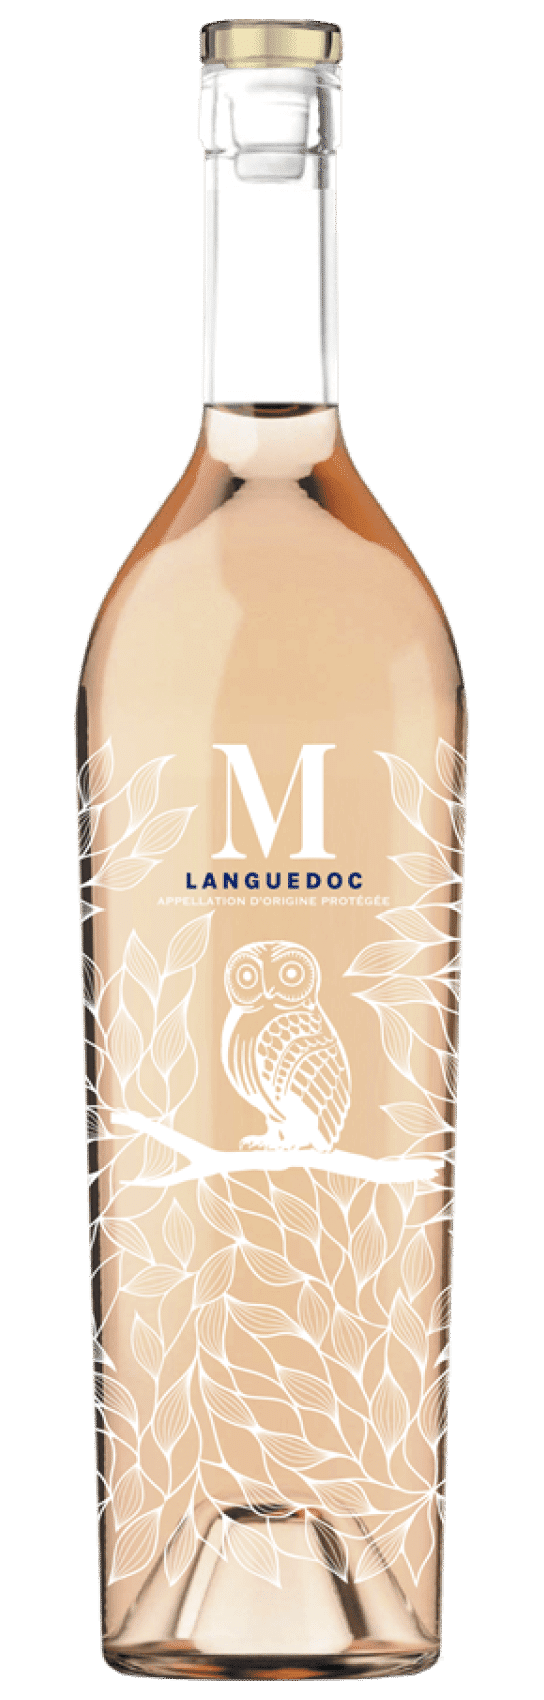 M Languedoc - Mythique